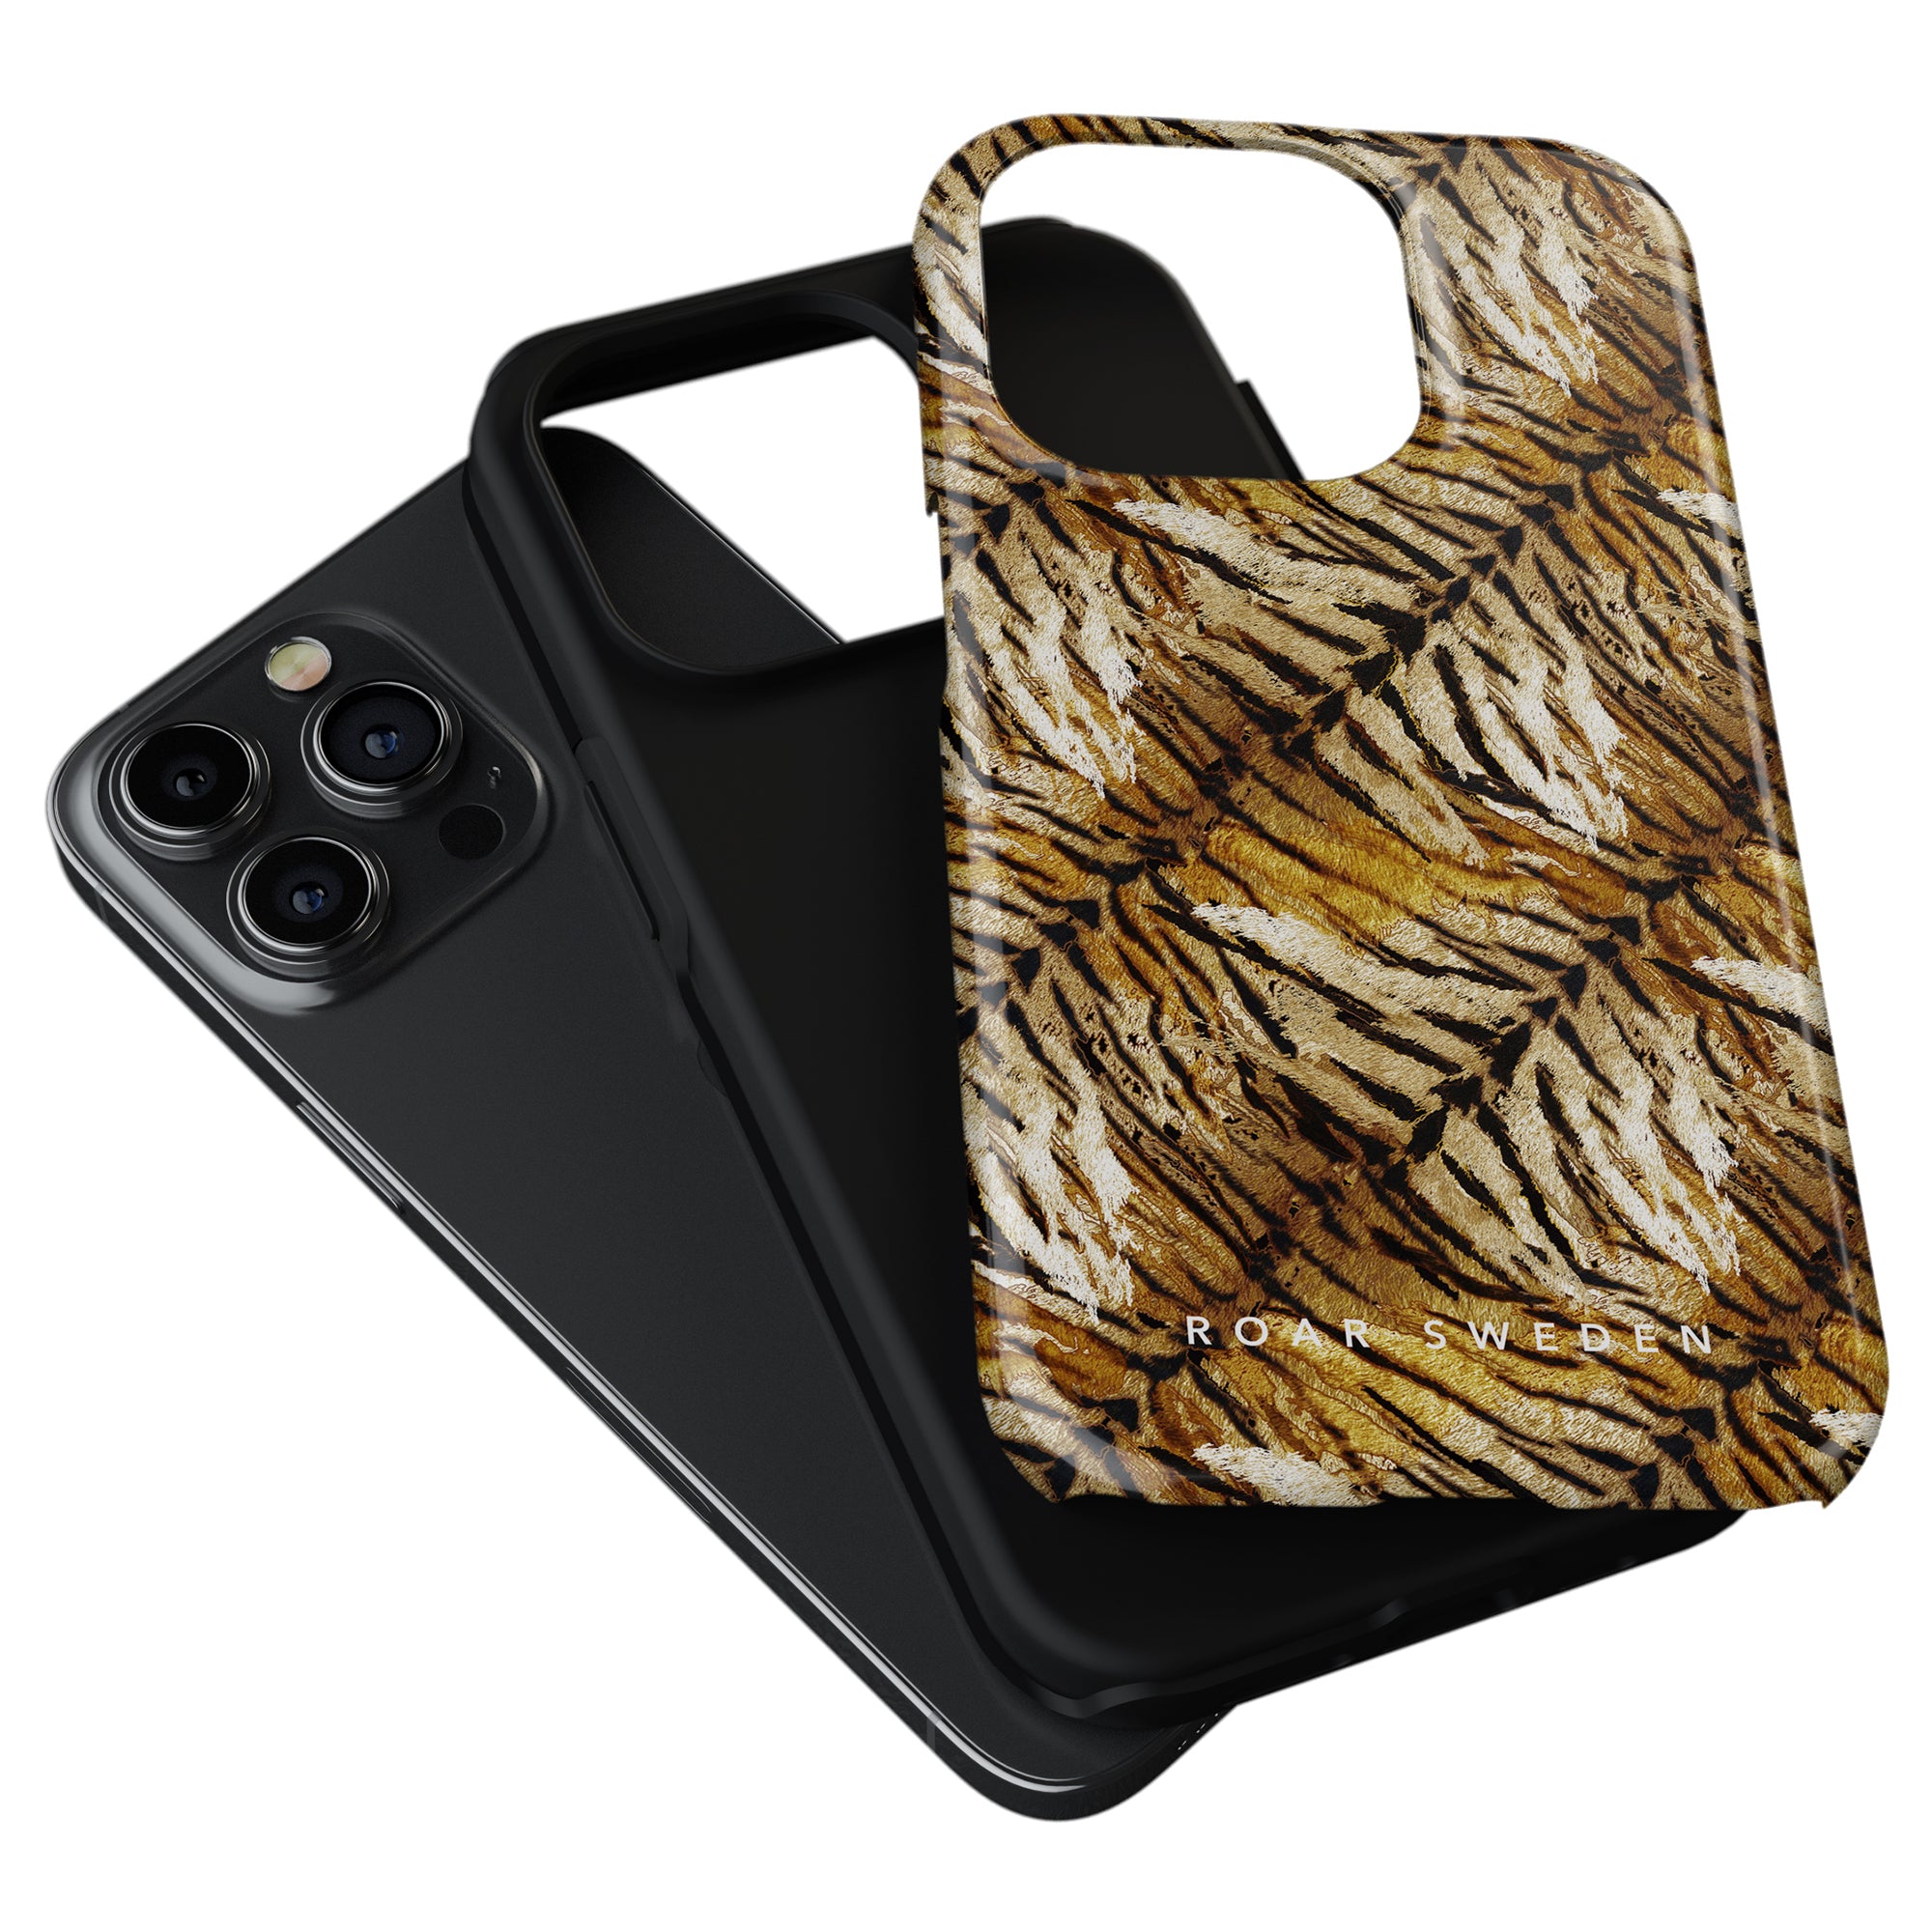 A stylish Bengal - Tough Case iPhone 11 Pro case.